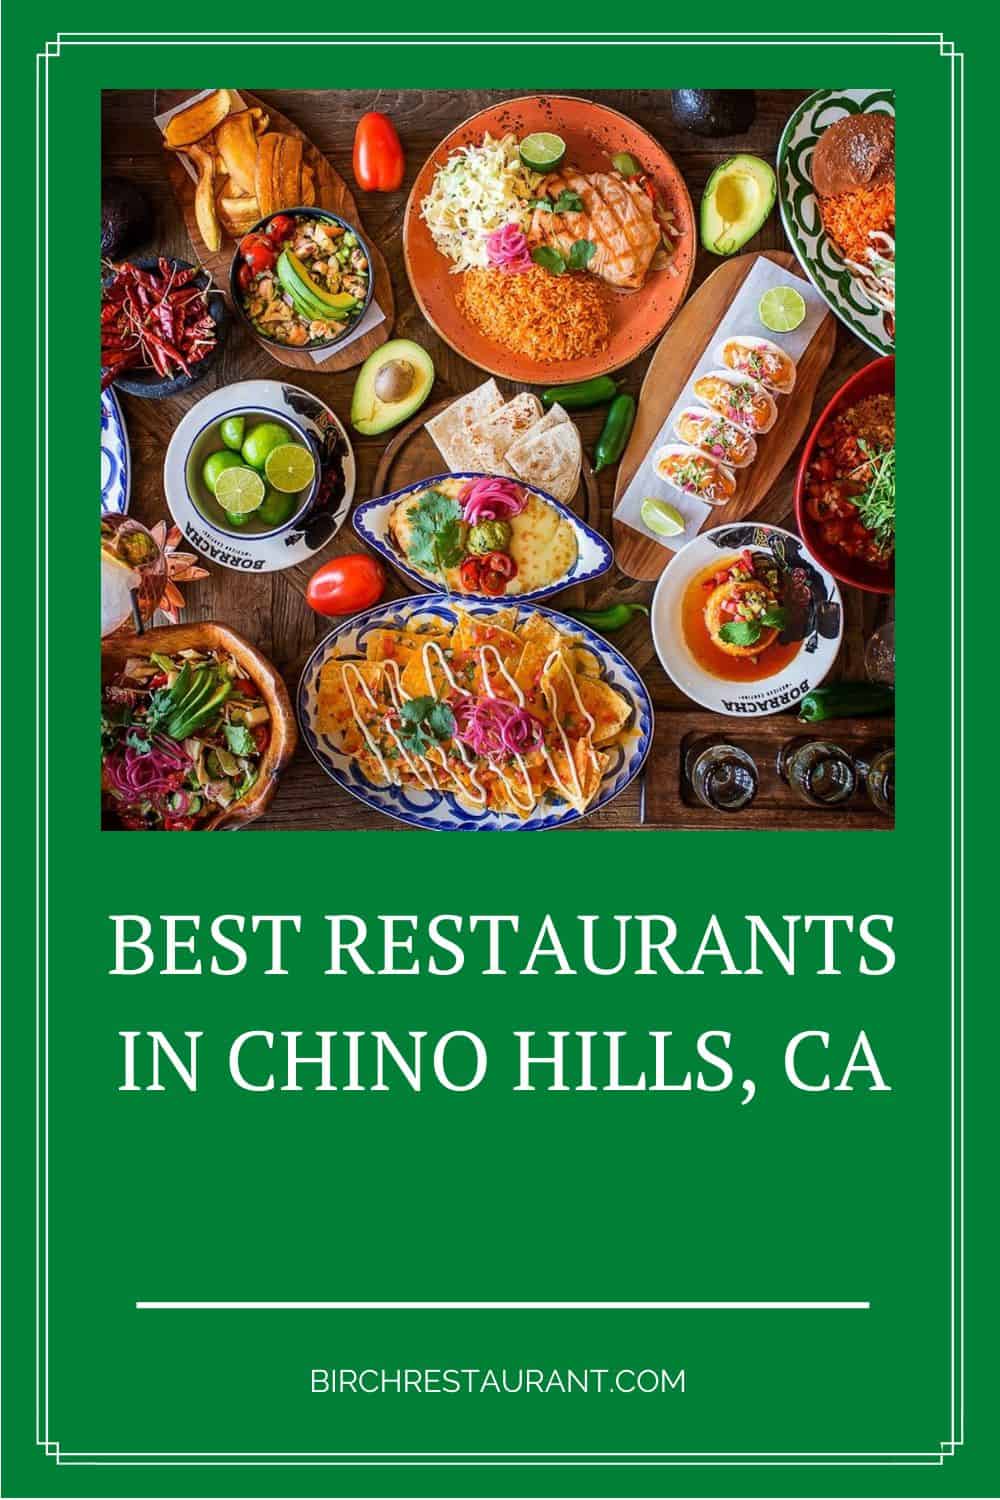 Best Restaurants in Chino Hills